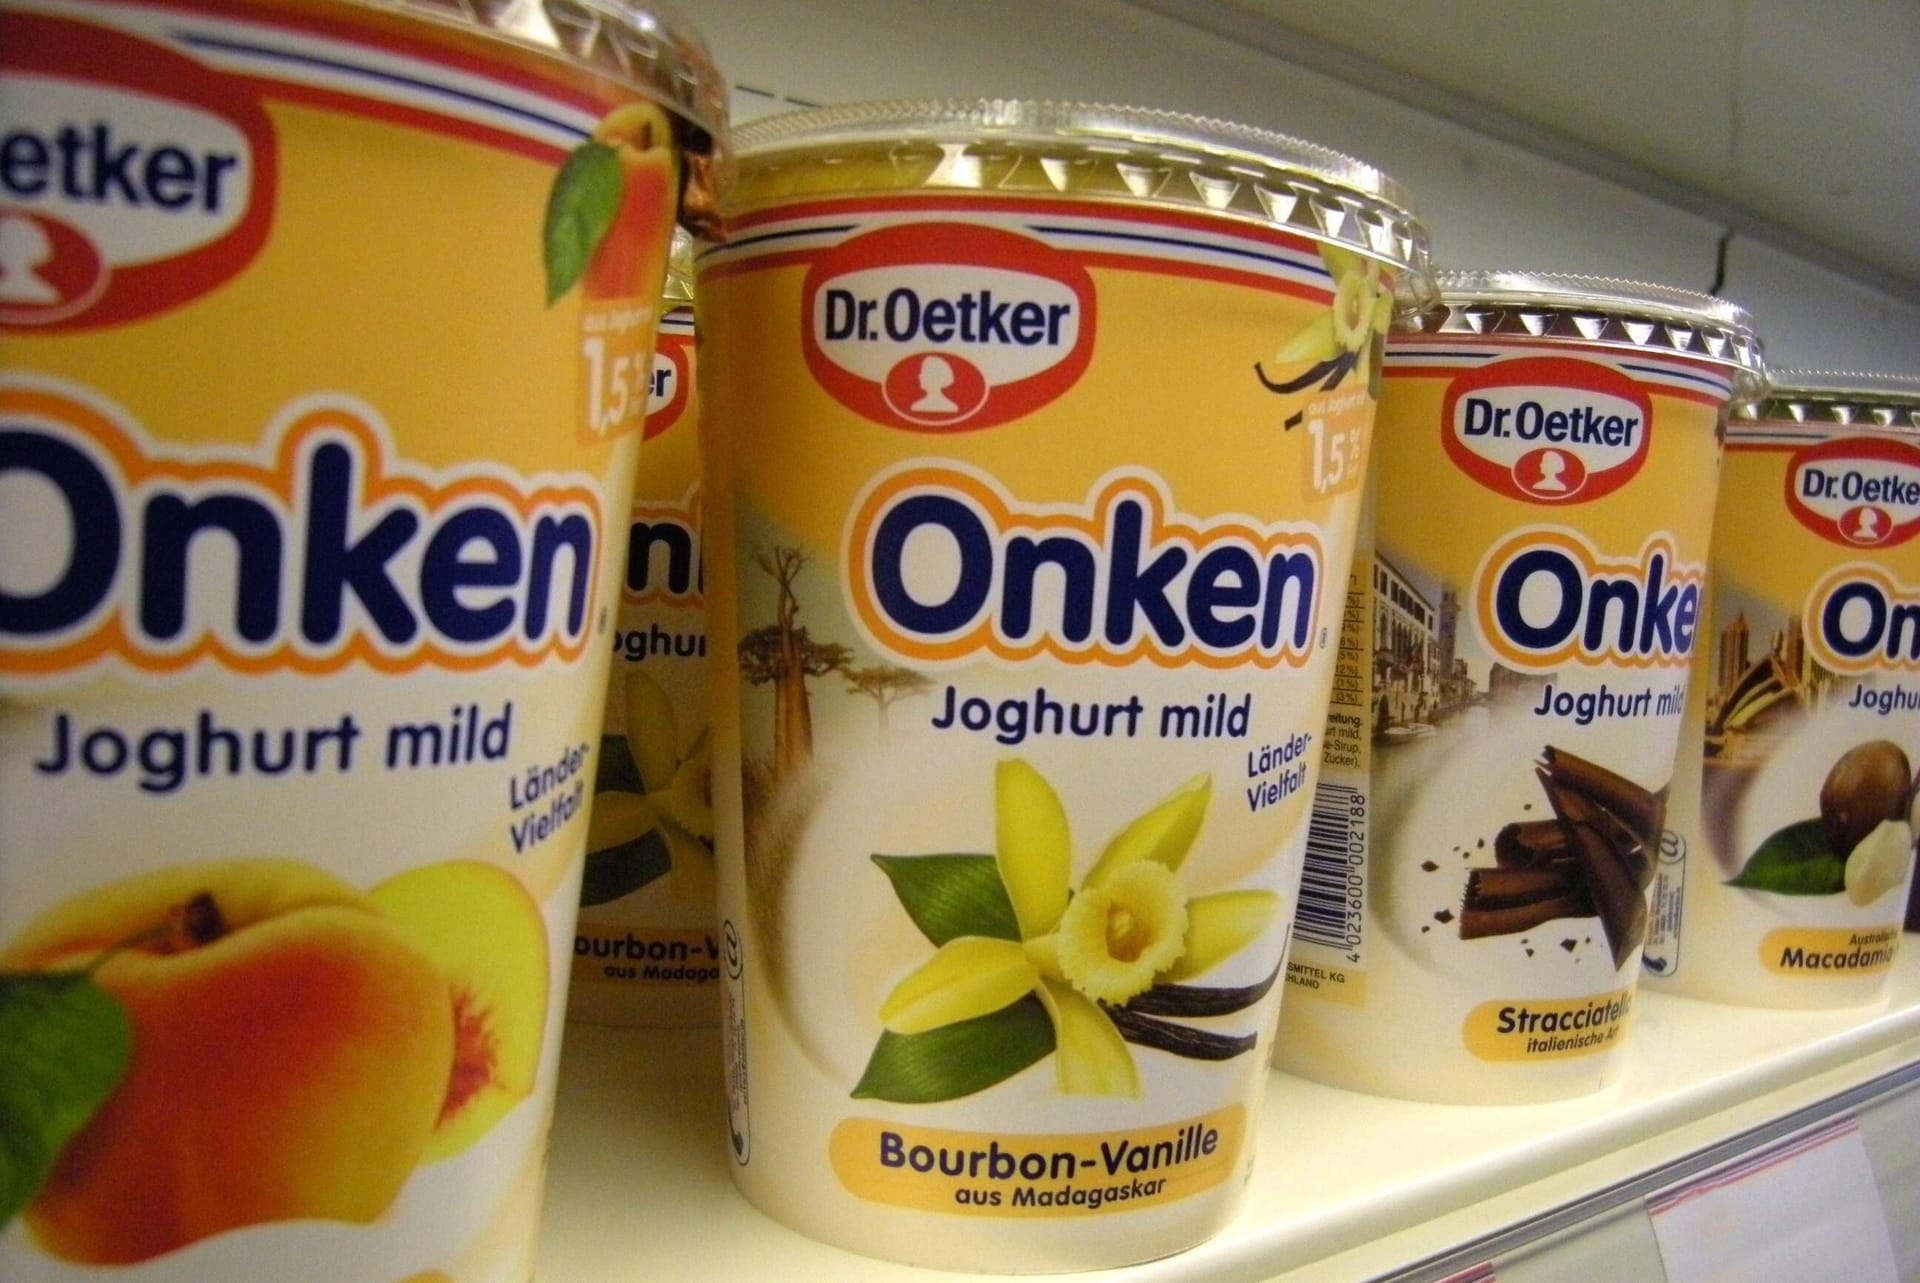 Ende 2022 verschwand die Marke "Onken" aus den deutschen Supermarktregalen. Der Hersteller von Joghurt und Quark wurde bereits 1940 gegründet und 2004 von Otto übernommen. Im Jahr 2011 erwarb die Schweizer Molkerei Emmi die Recht an der Marke. Zu Onken gehörte auch der "Frufoo"-Quark, der in den 90ern besonders bei Kindern beliebt war.